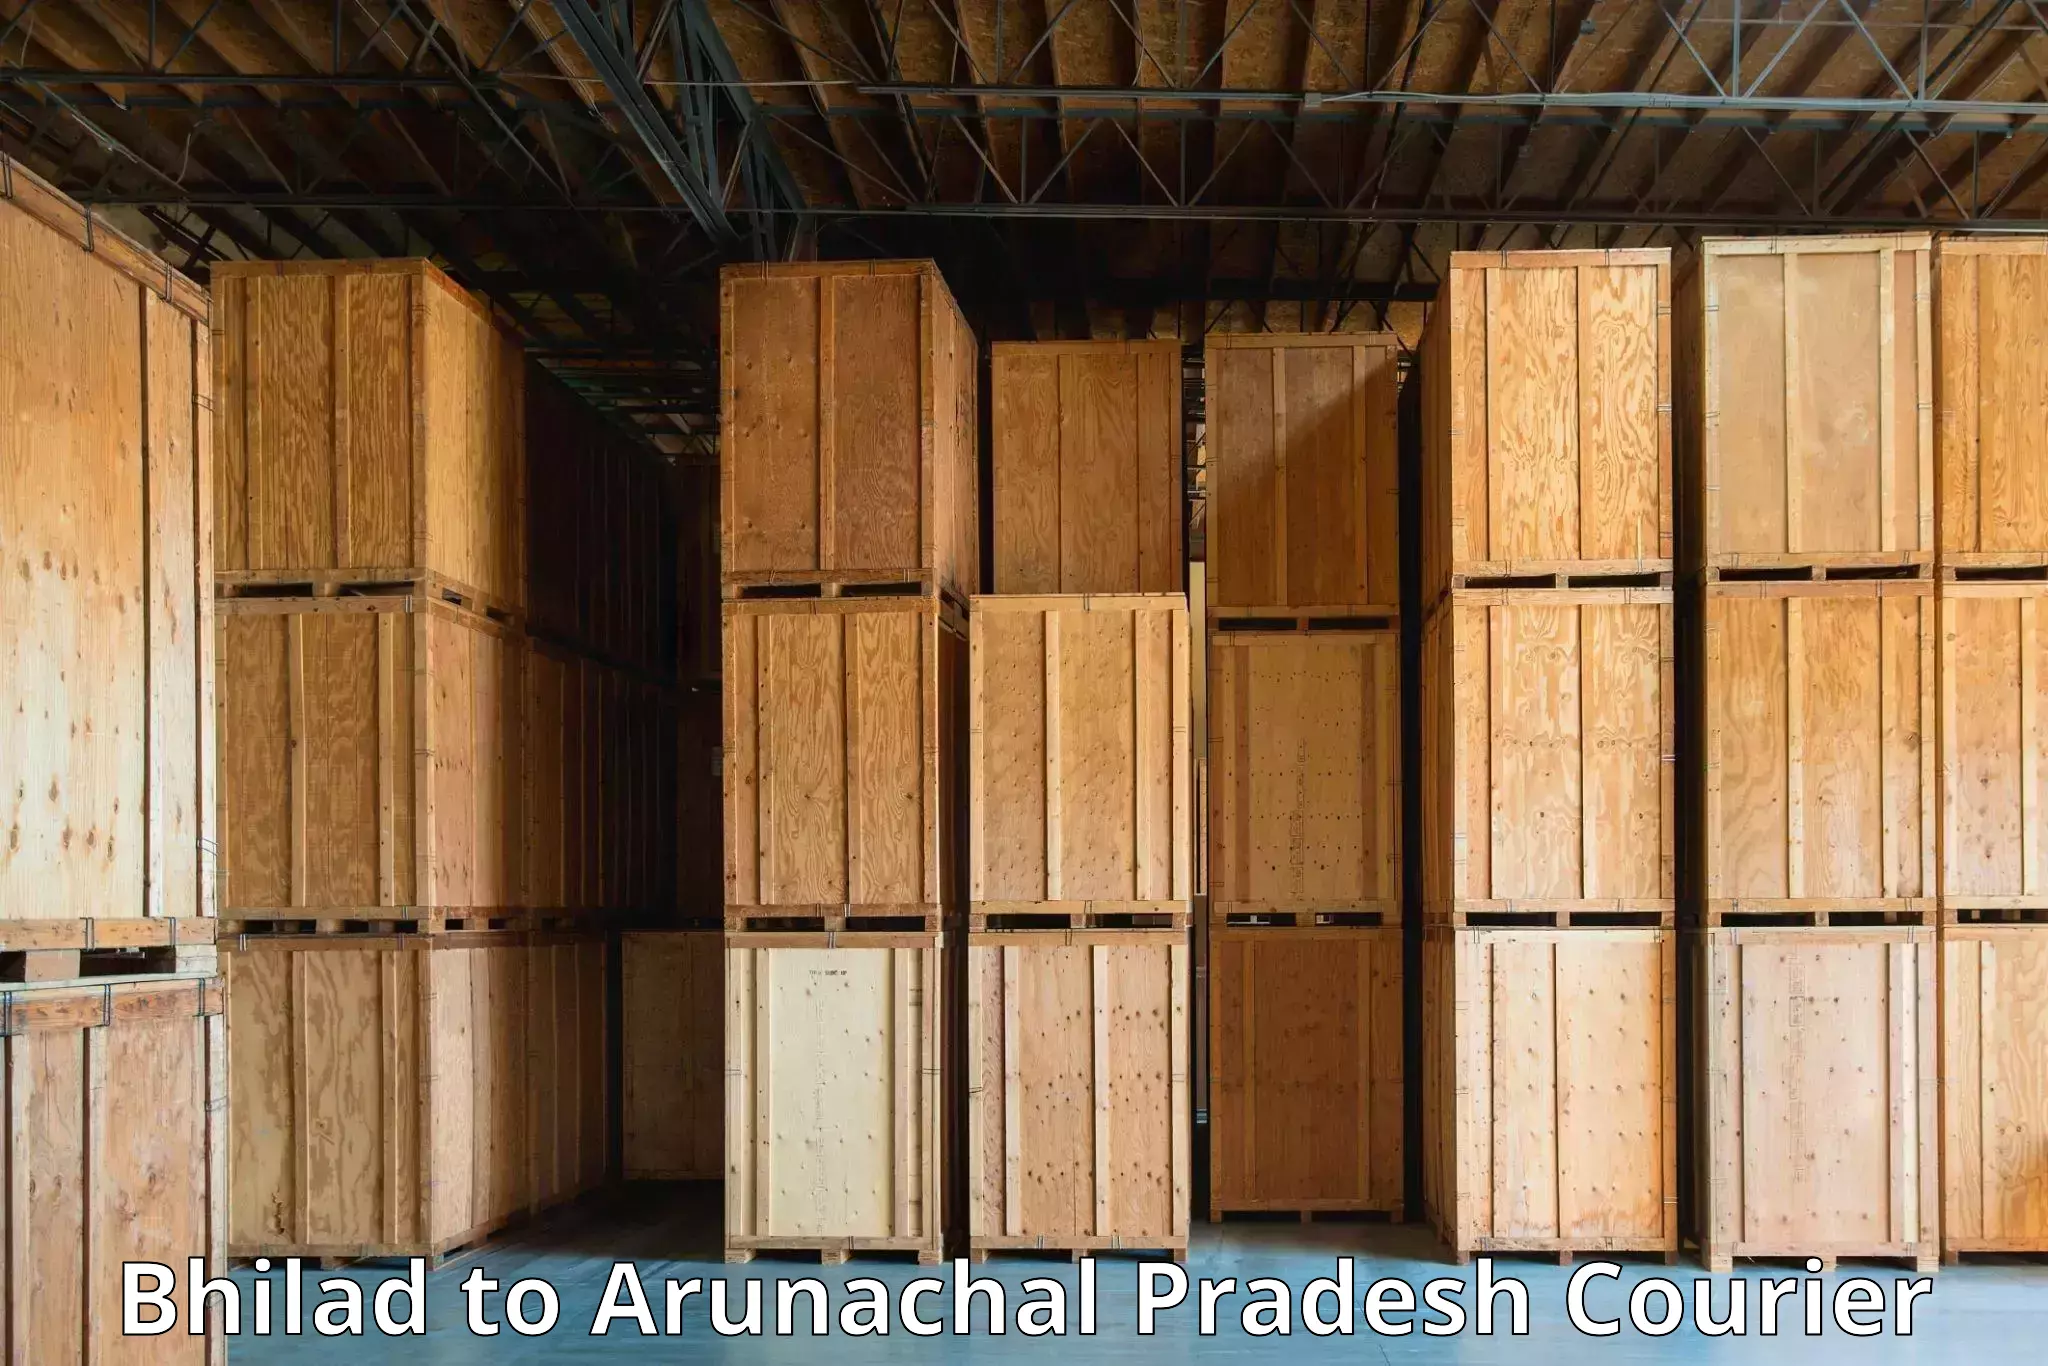 Efficient parcel tracking Bhilad to Arunachal Pradesh